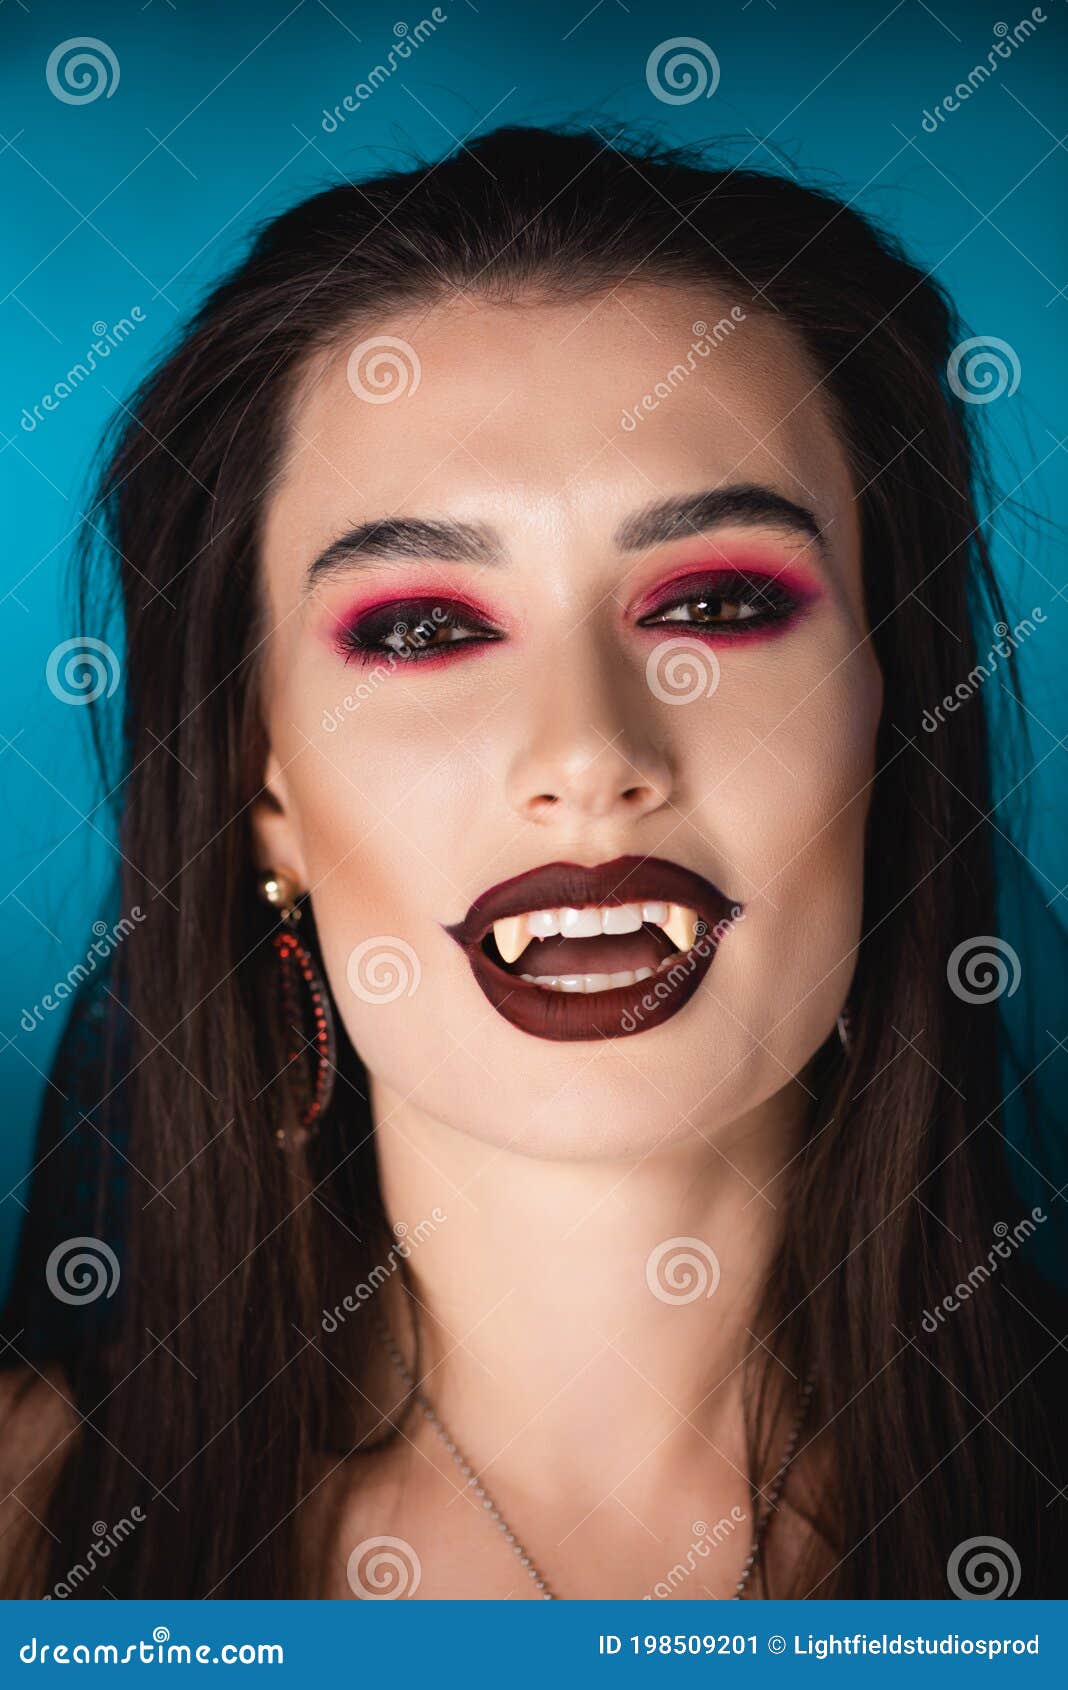 Maquiagem para vampiro 